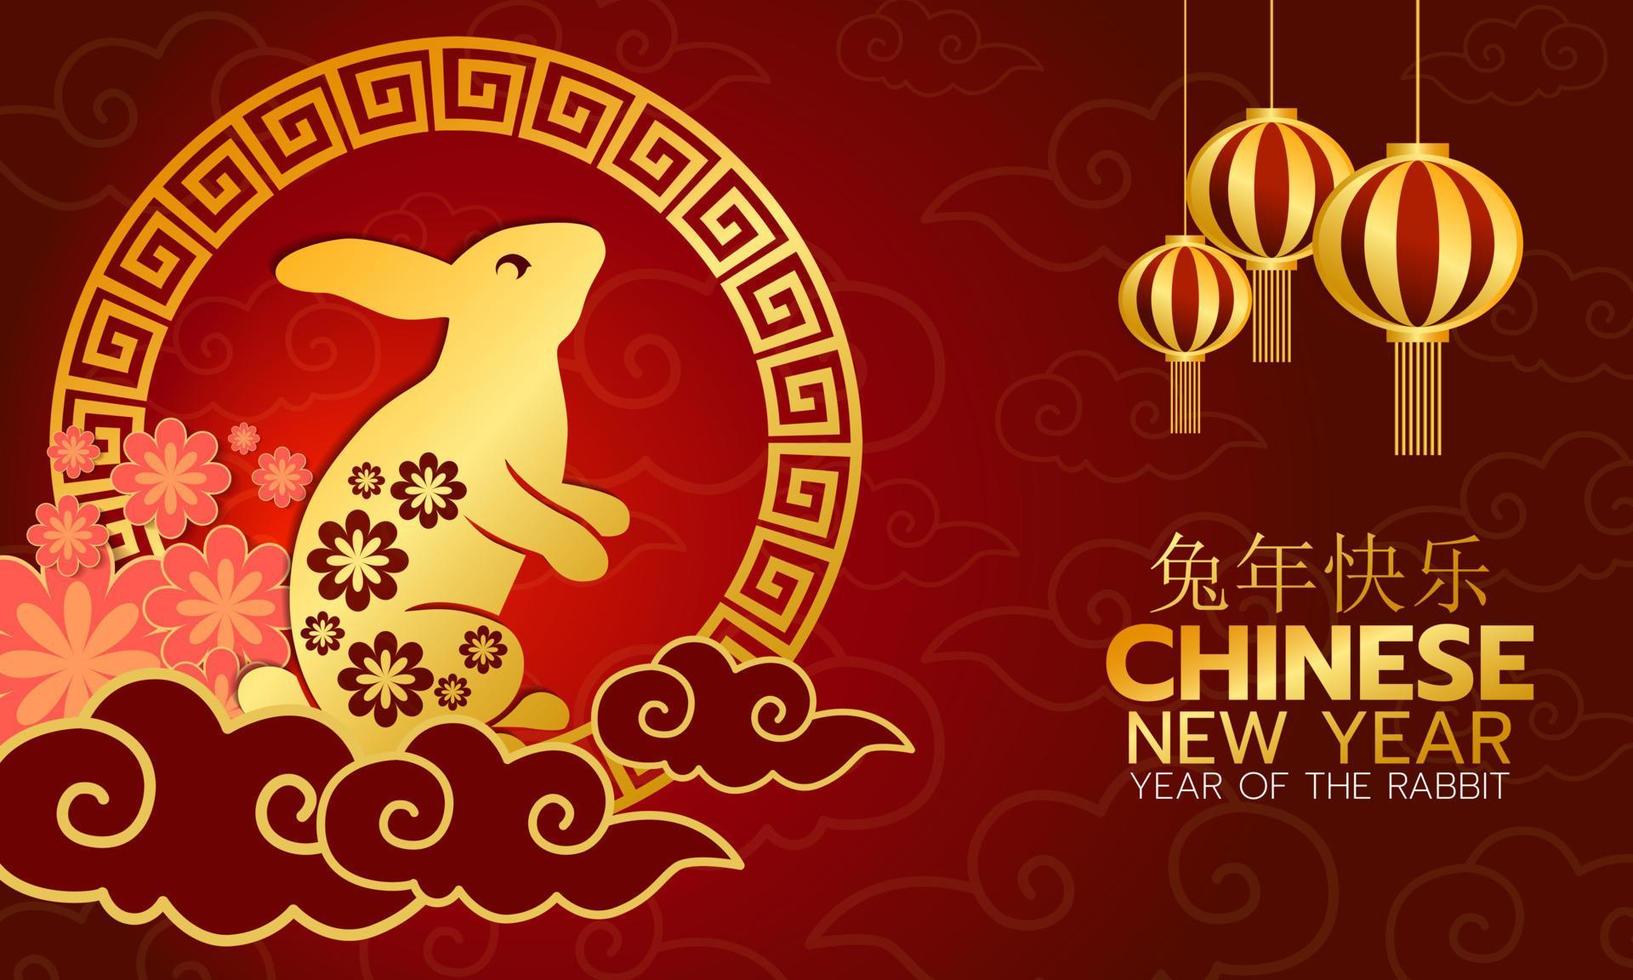 ano Novo Chinês. ano do coelho vermelho e dourado no fundo. vector design.illustration.